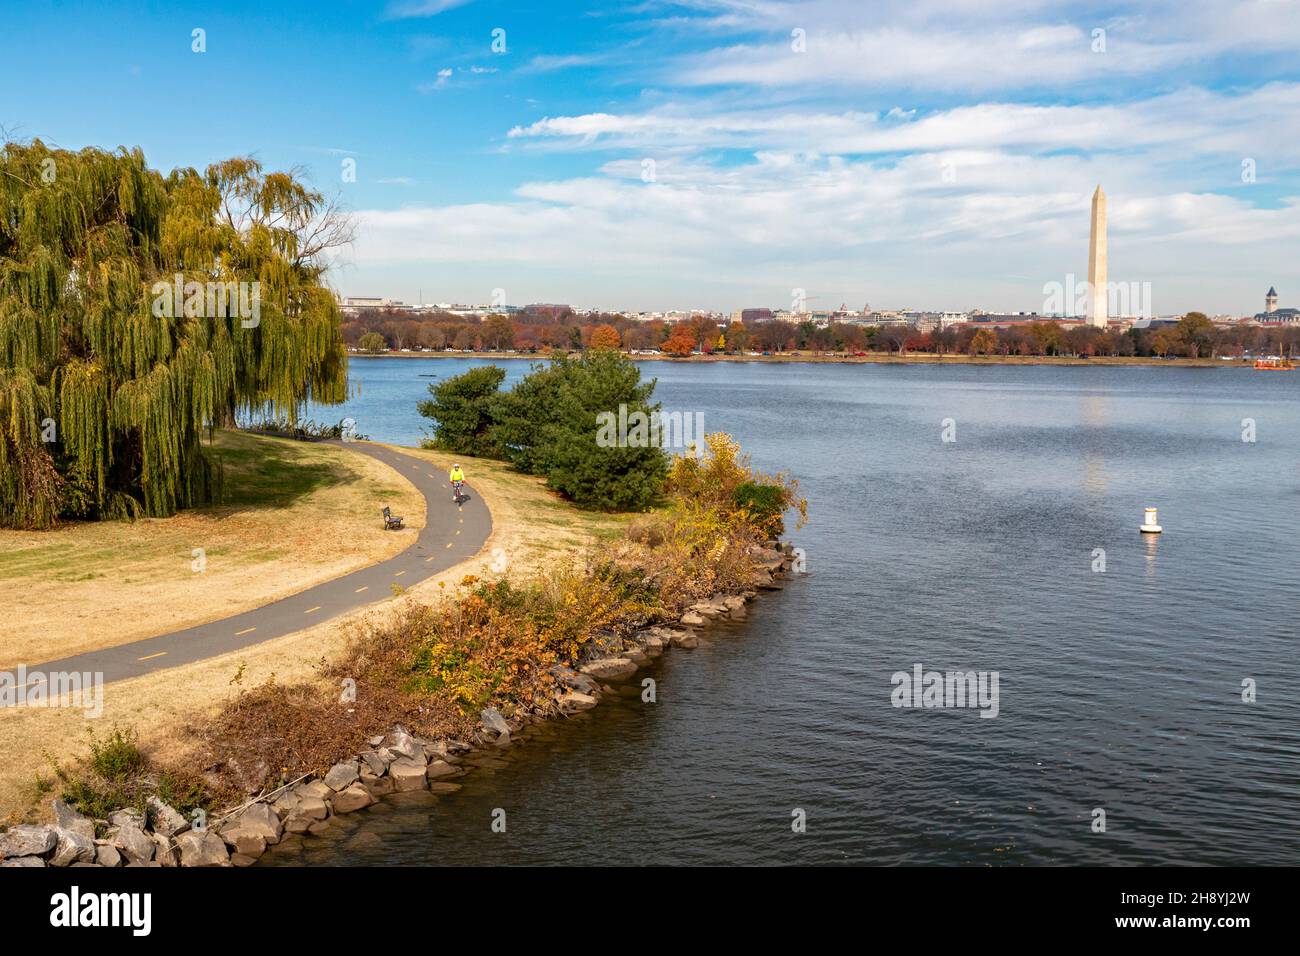 Arlington, VIRGINIA - Un sendero para bicicletas a lo largo del río Potomac, con vistas al monumento de Washington al otro lado del río. Foto de stock